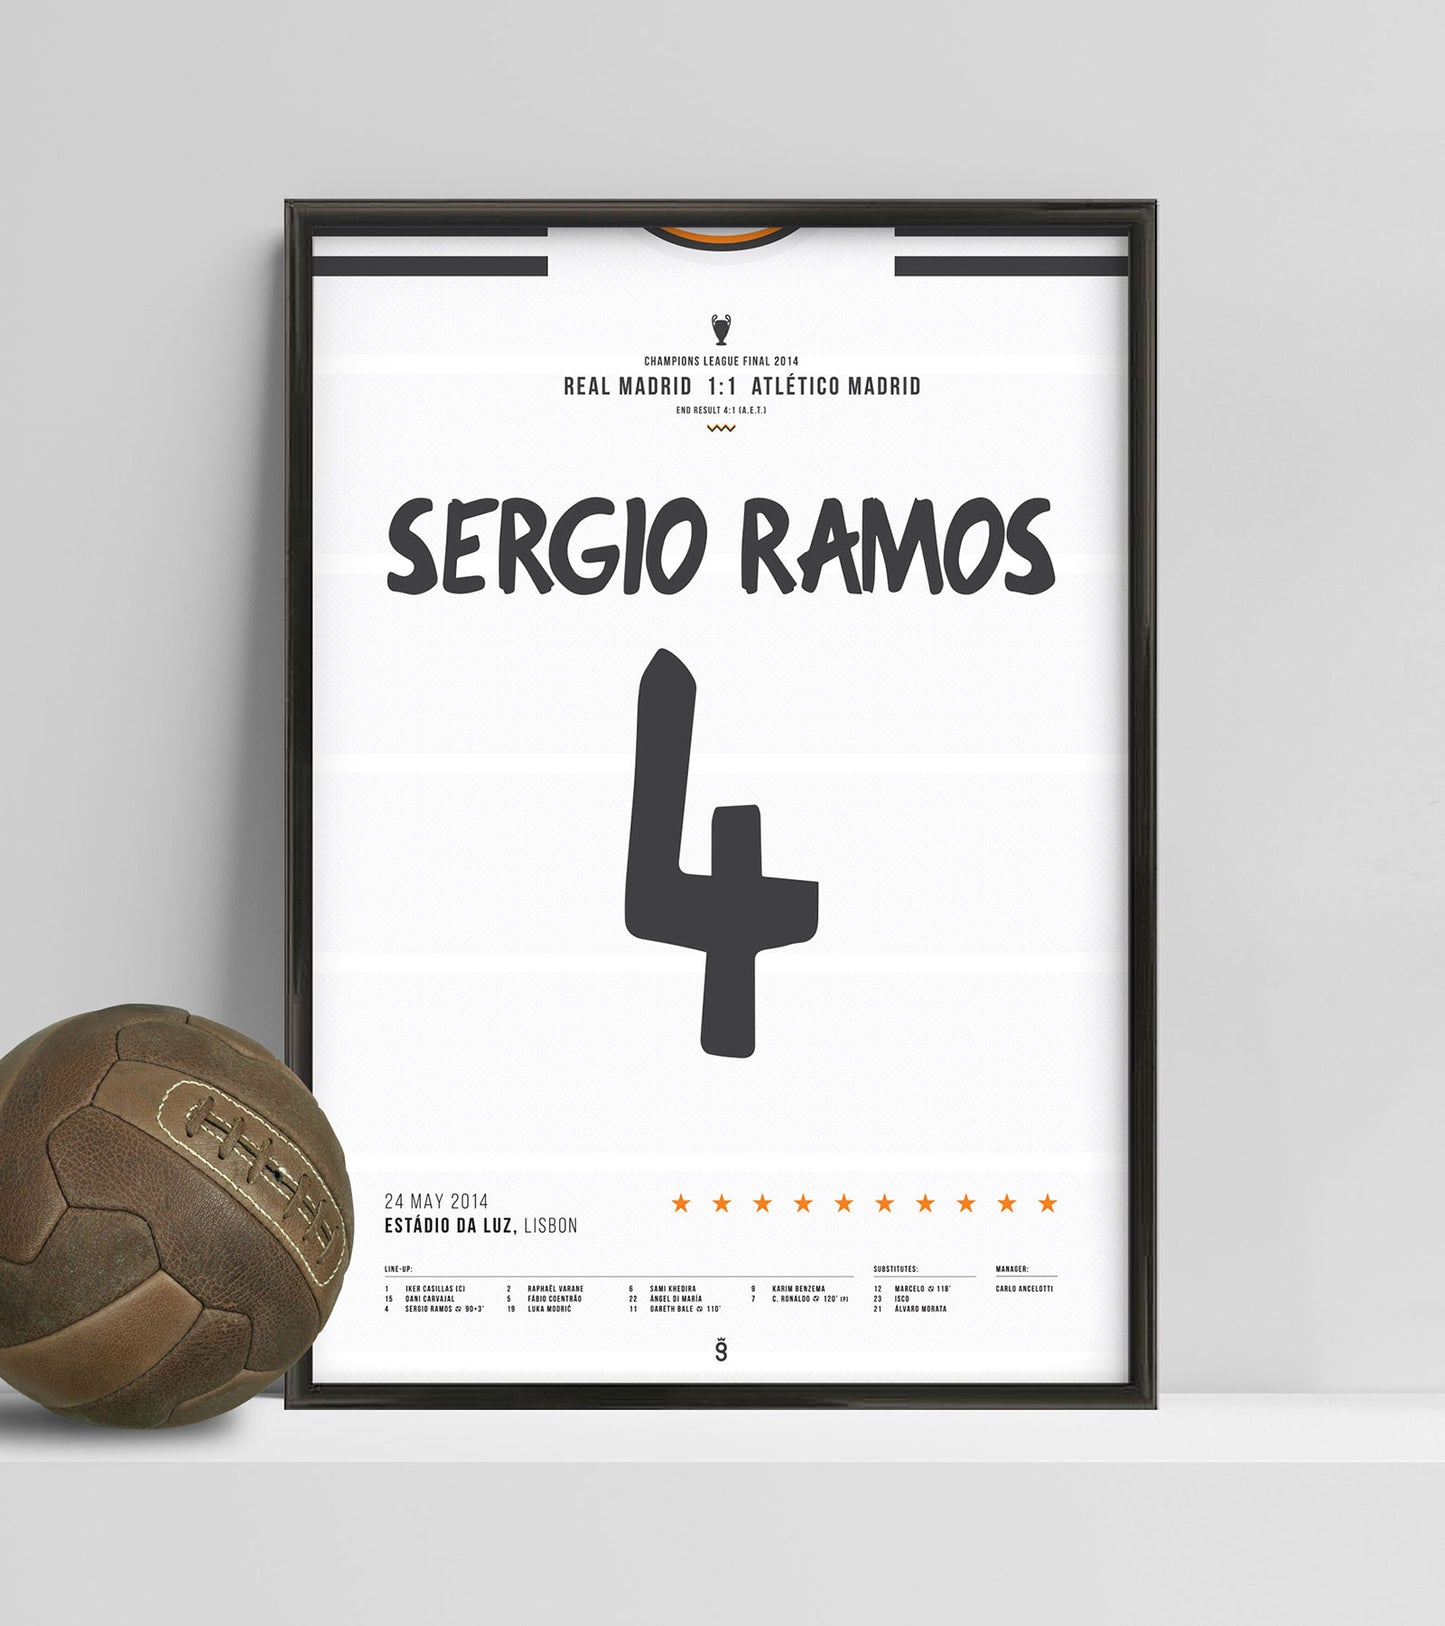 Sergio Ramos' "La Décima" goal (Jersey ver.)